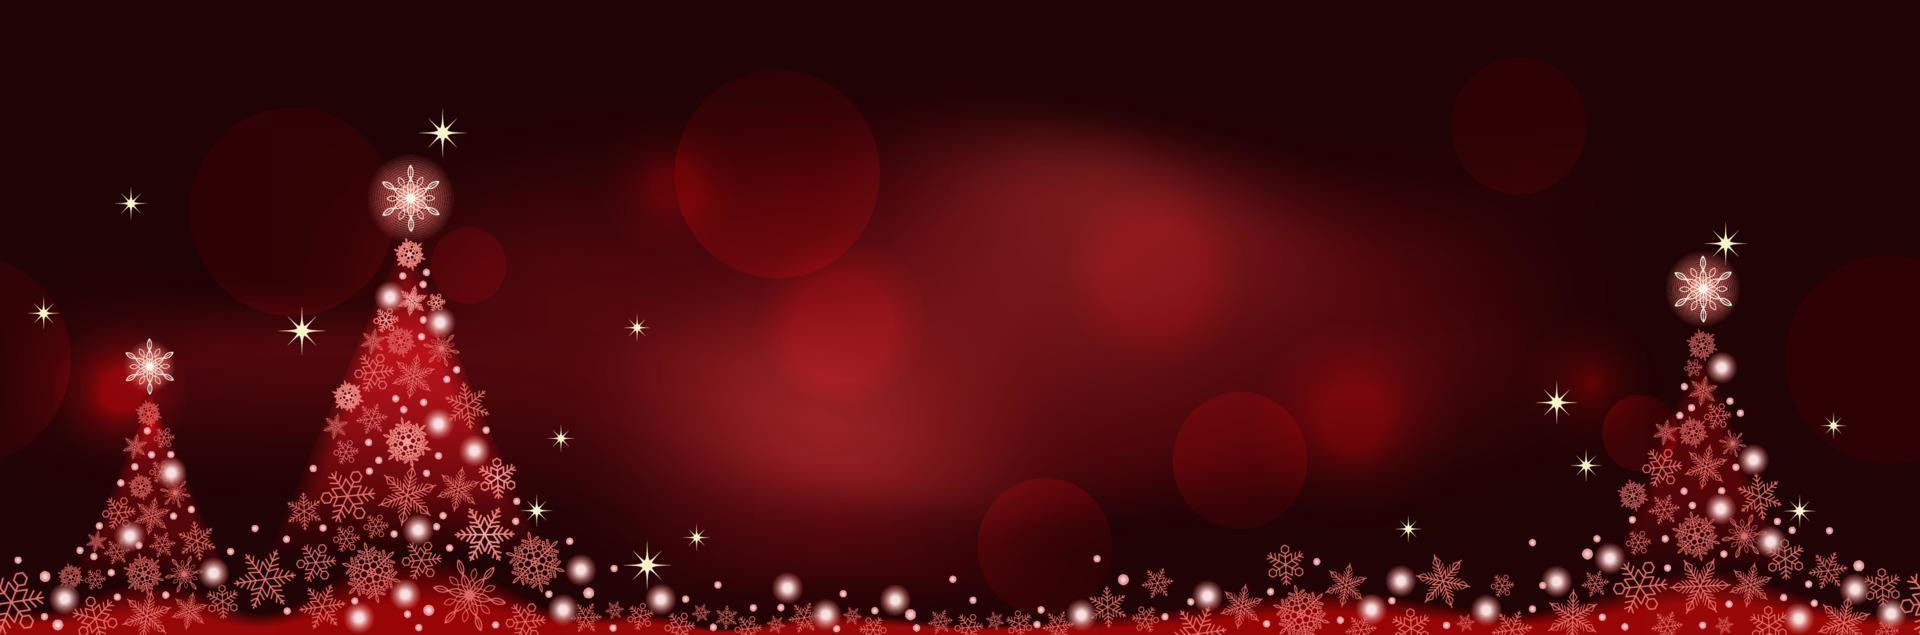 Fondo de vector transparente de invierno rojo abstracto con árboles de Navidad y espacio de texto. horizontalmente repetible.